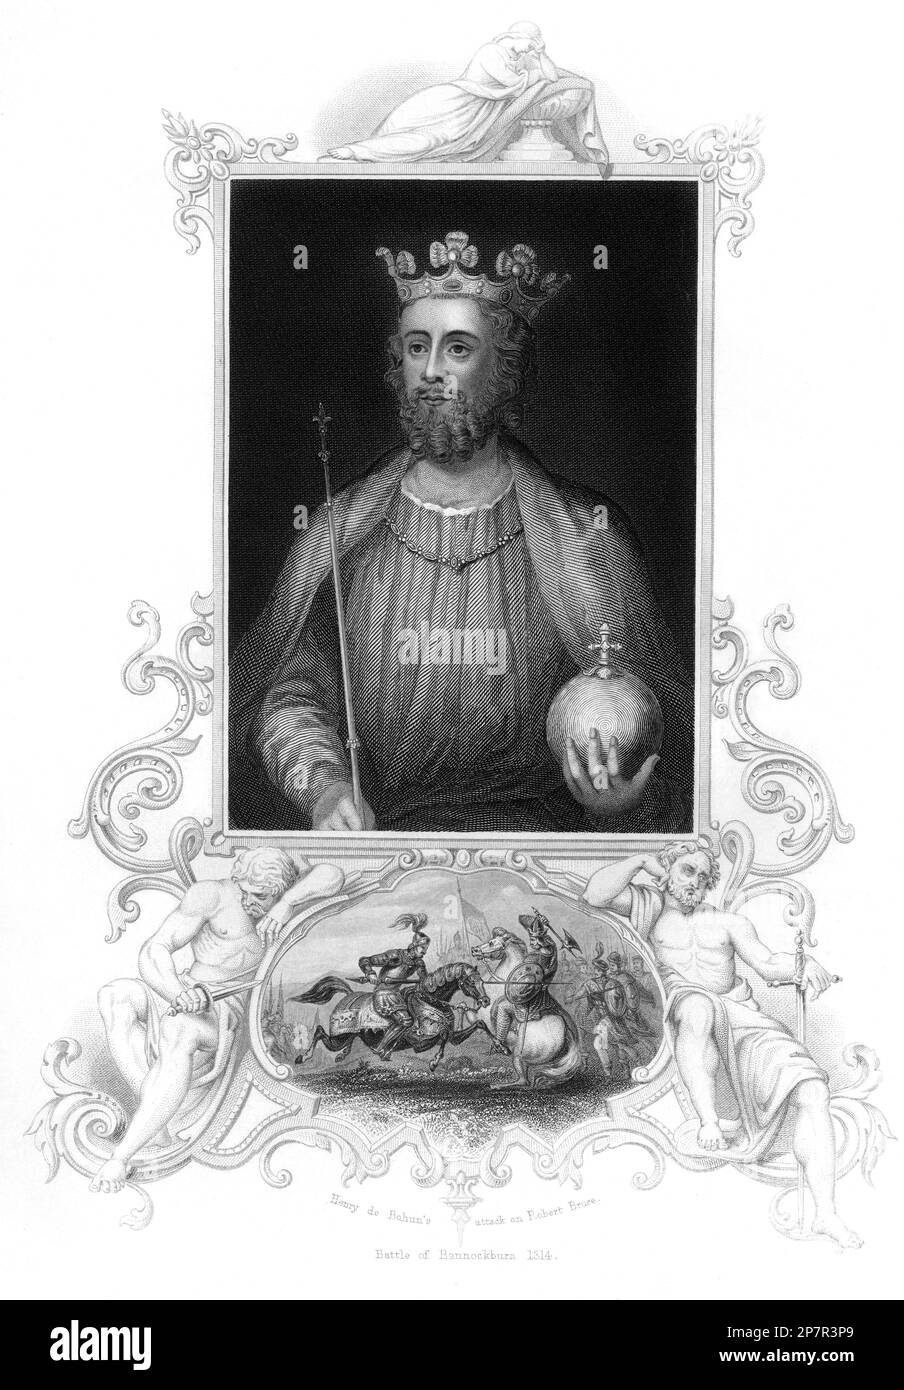 Le roi d'Angleterre EDWARD II ( 1284 - 1327 ), portrait du XIX siècle gravure avec la rapresentation de l'attaque de Henry de Bahun sur Robert Bruce , bataille de Bannochburn 1314 . A été roi d'Angleterre de 1307 jusqu'à déchu en janvier 1327. Il est peut-être aujourd'hui mieux rappelé pour une histoire sur son meurtre présumé, qui était lié à sa dépendance à la famille corrompue de Hugh le Despenser, qui a été vu par la preuve de son homosexualité . Amant de Piers Gaveston . L'histoire inxpire une pièce de Christopher Marlowe , a d'abord agi en 1592 c. - RE - REALI - ROYALTIES - nobili - nobiltà - ING Banque D'Images